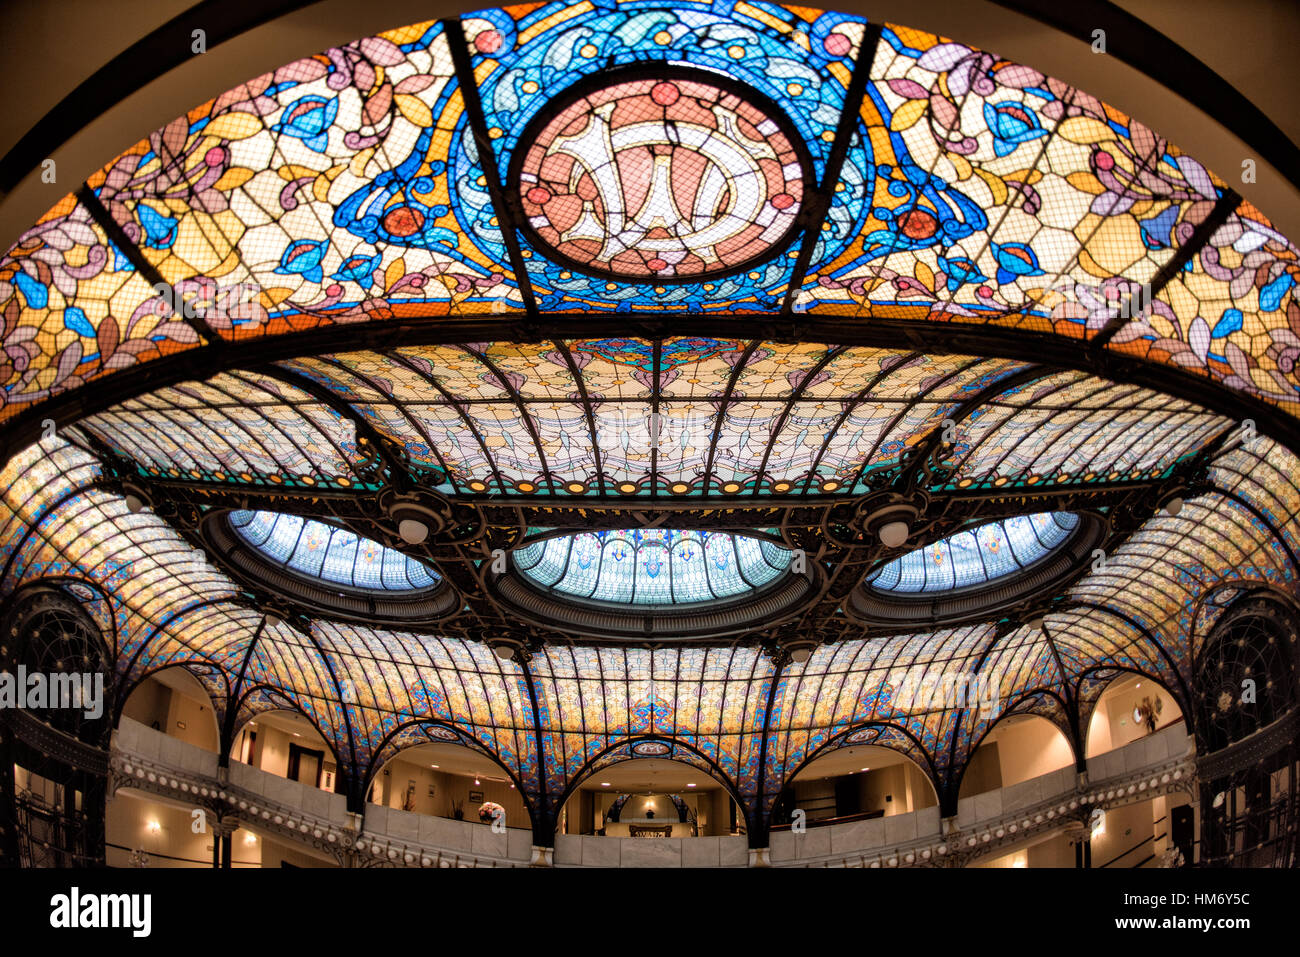 Città del Messico - Art Nouveau atrio del Gran Hotel Cuidad de Mexico nel cuore di Città del Messico distretto storico di s. Un punto culminante è il stile Tiffany soffitto in vetro colorato. Foto Stock